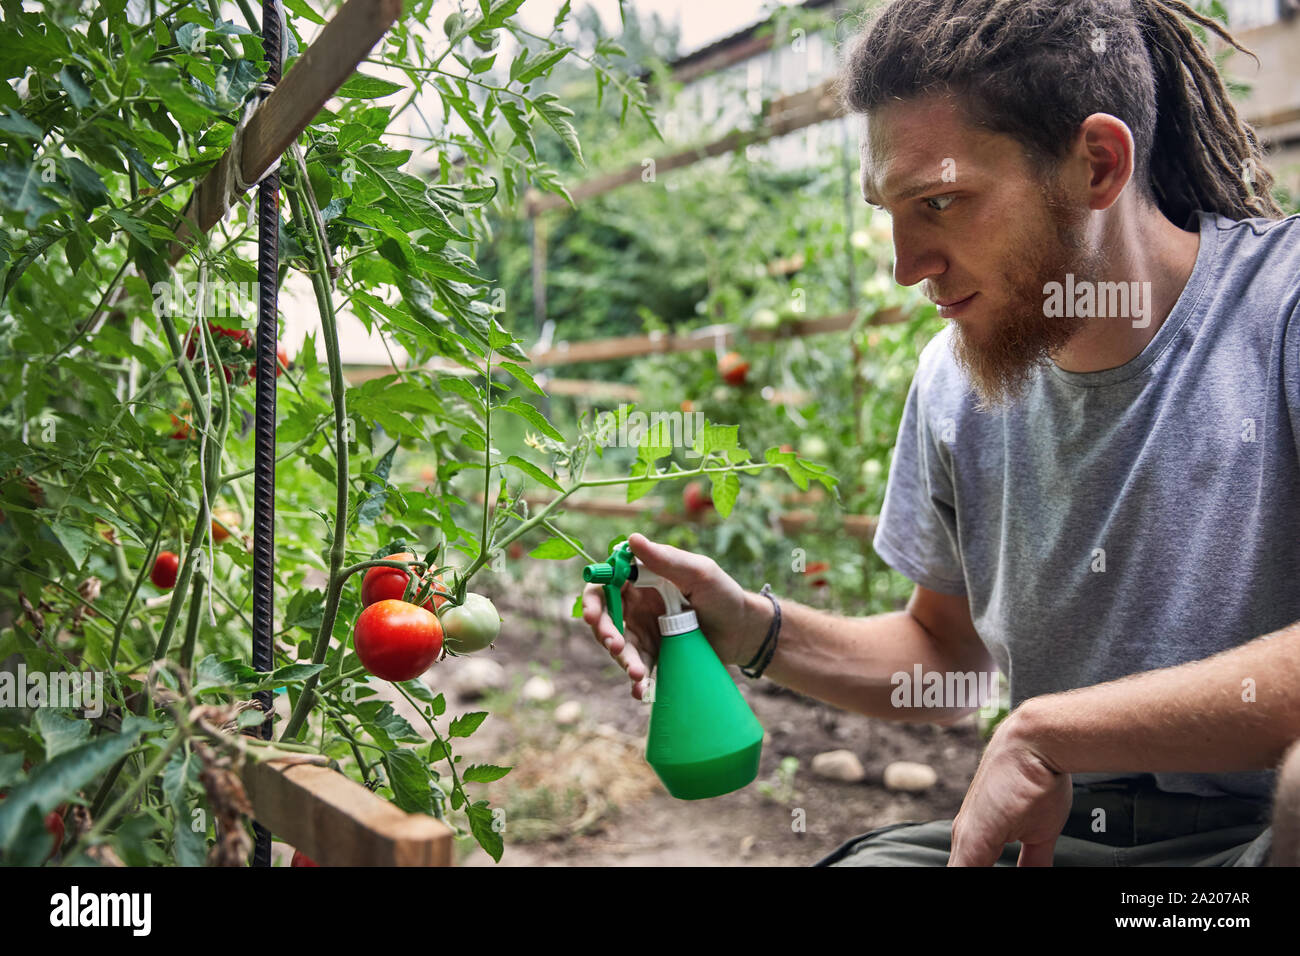 Bärtige Landwirt mit Dreadlocks arbeitet mit Garten im Hinterhof seines Hauses. Natürliche Landwirtschaft und gesunde Ernährung Konzept Stockfoto